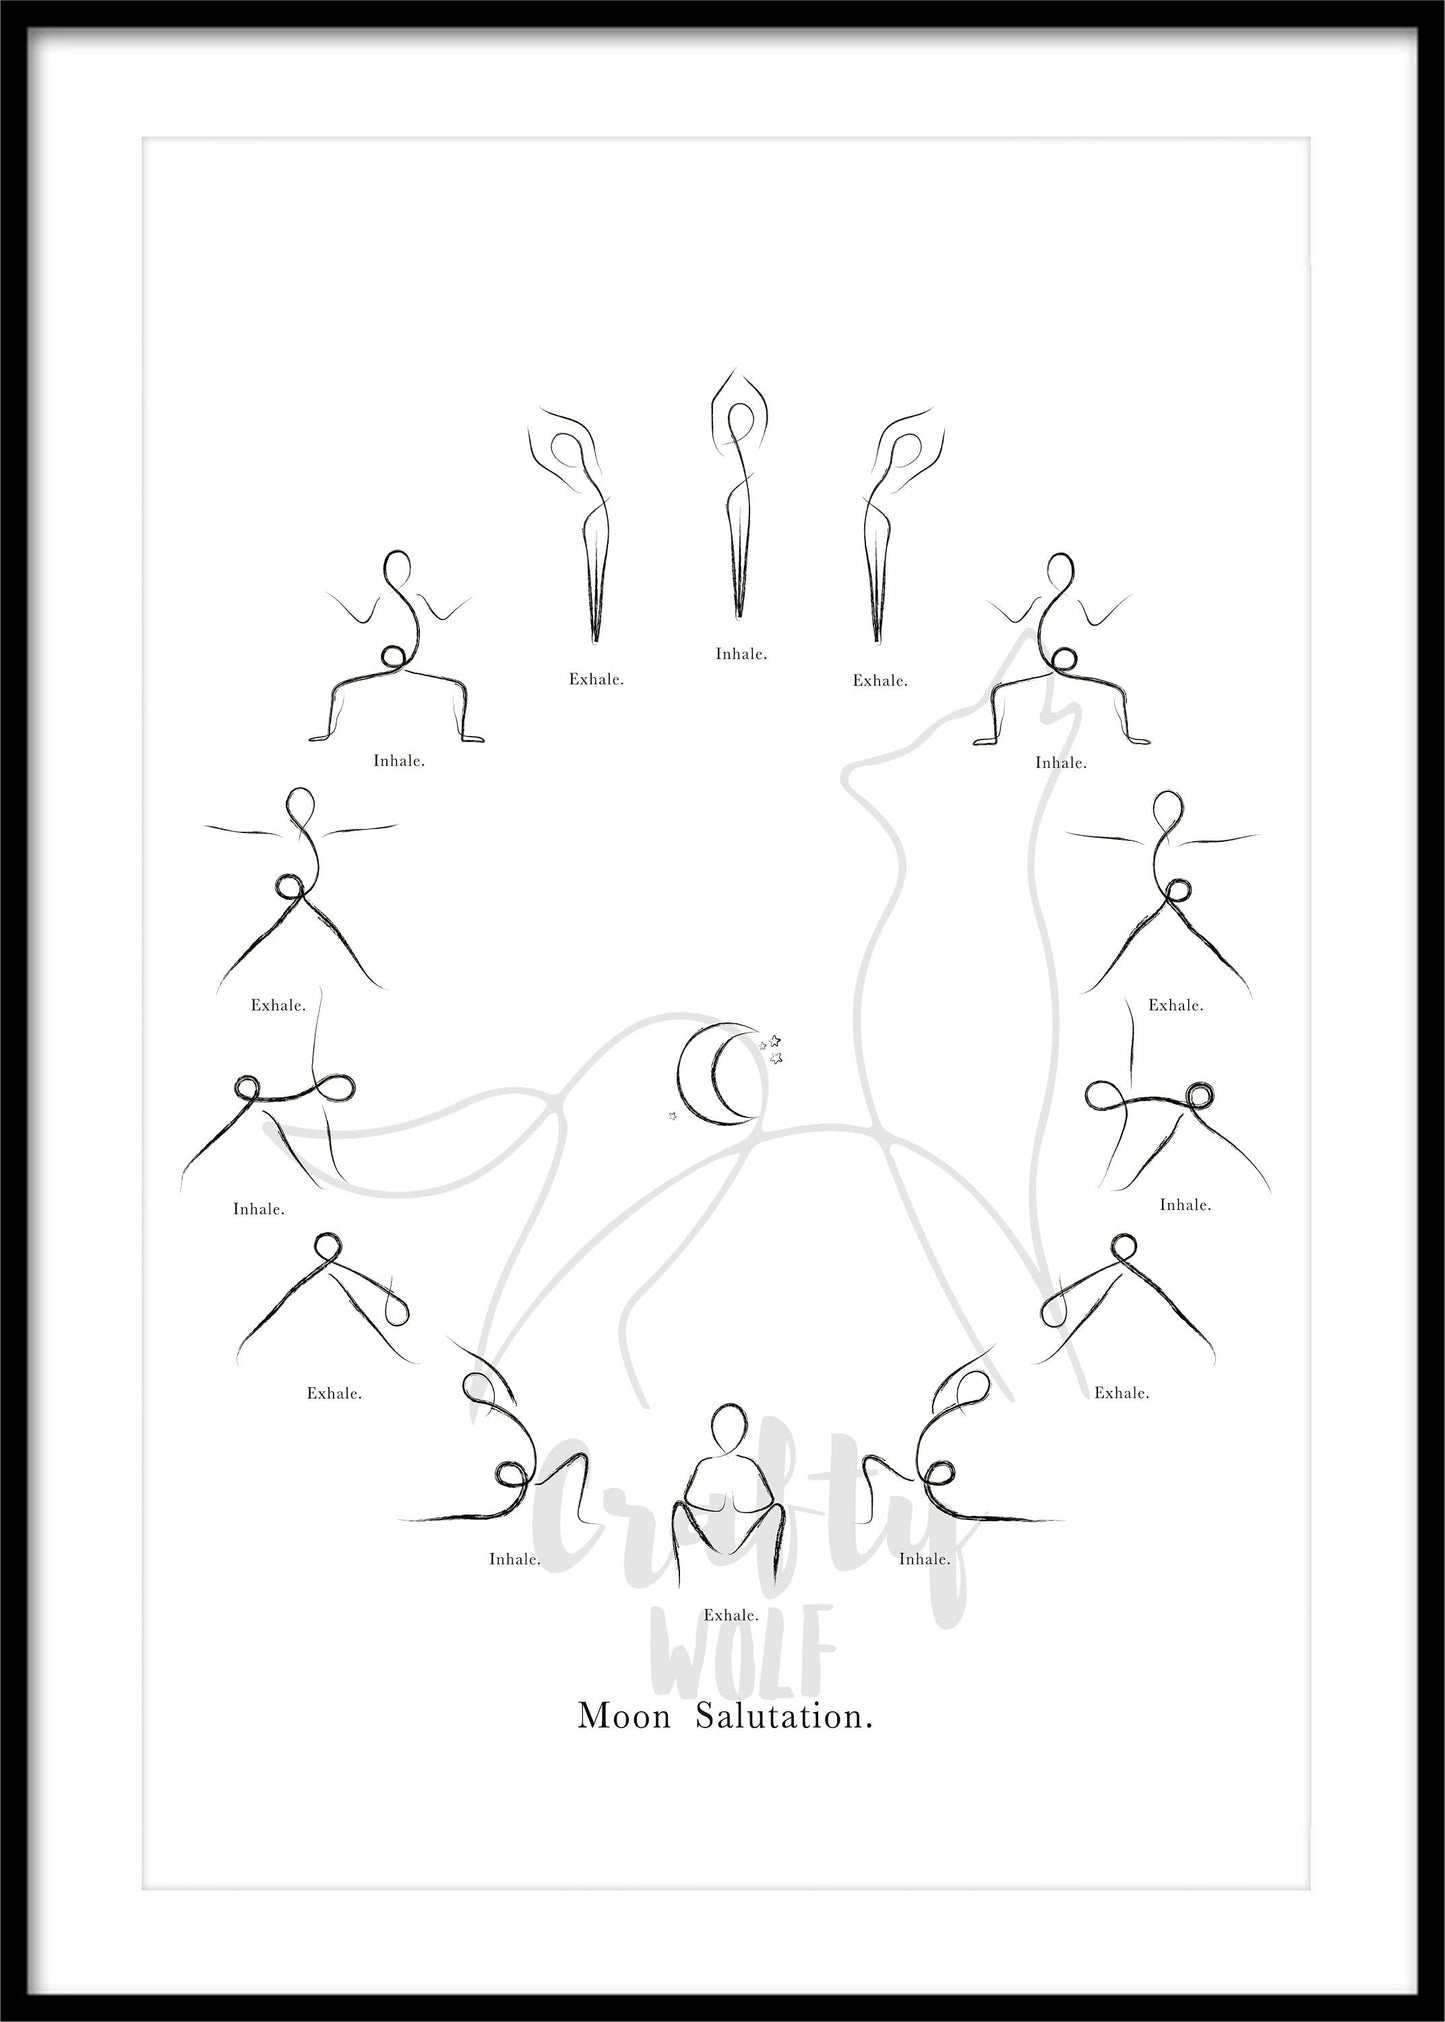 'Moon Salutation' - Yoga Poses Print